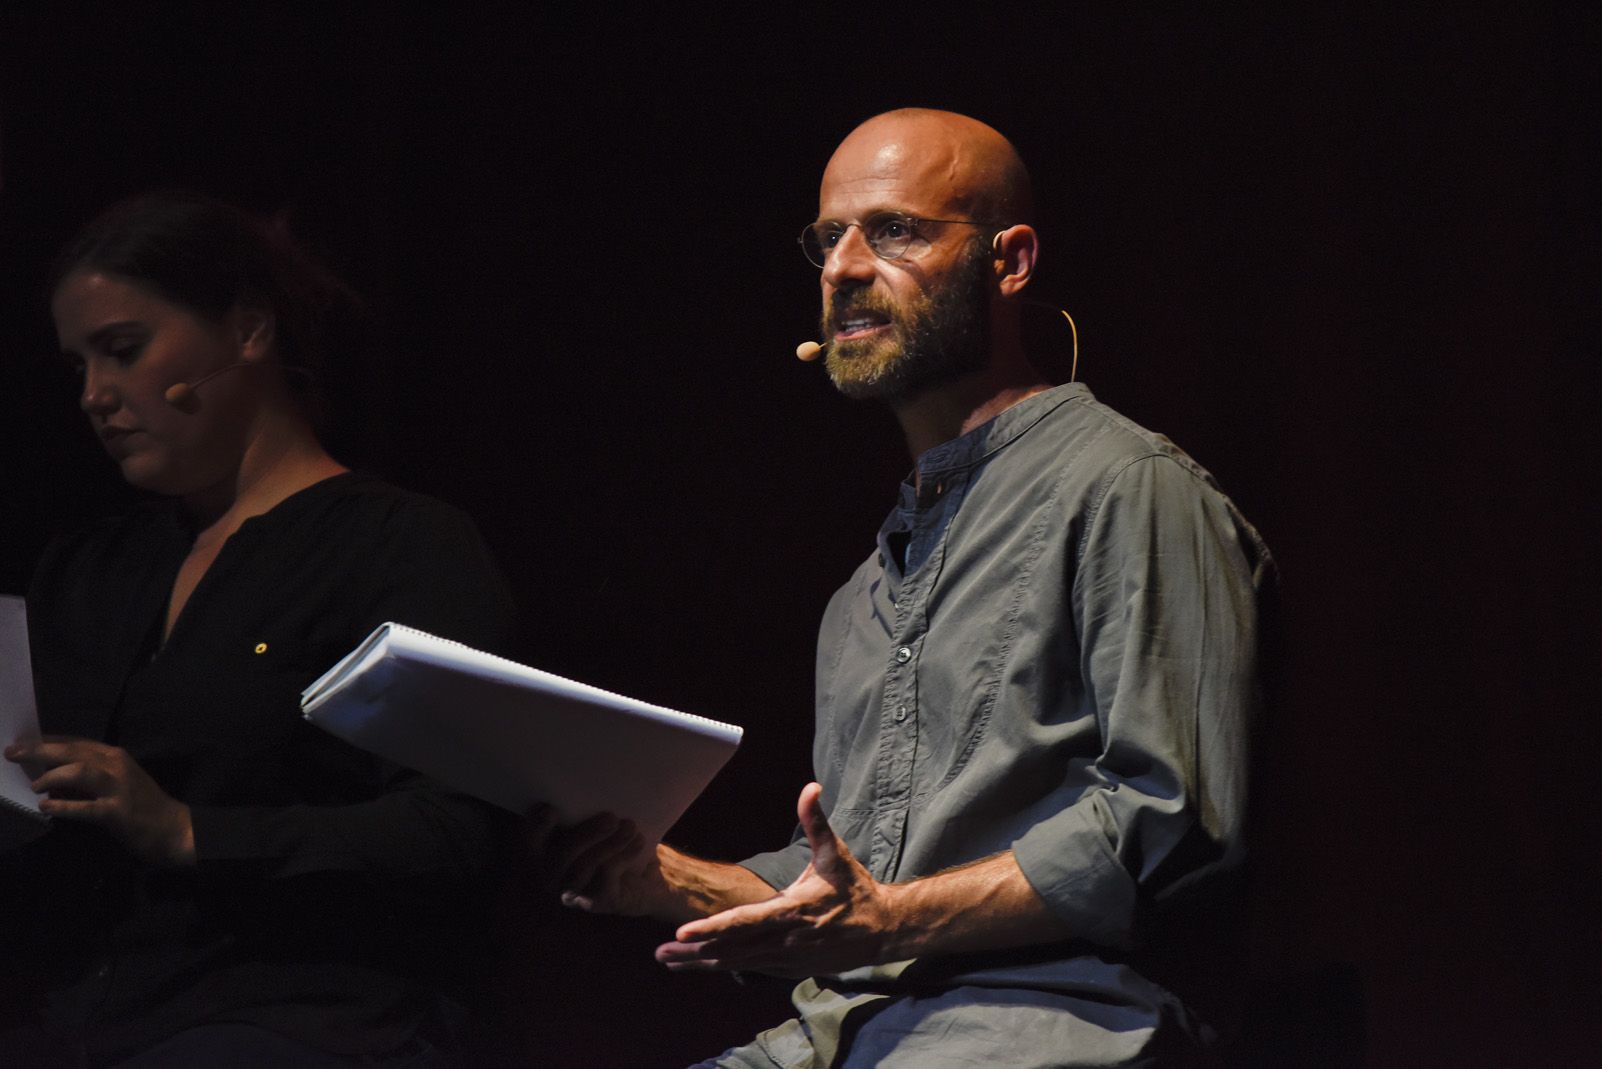 Inauguració del Festival Nacional de Poesia a Sant Cugat 2019. Foto: Bernat Millet.